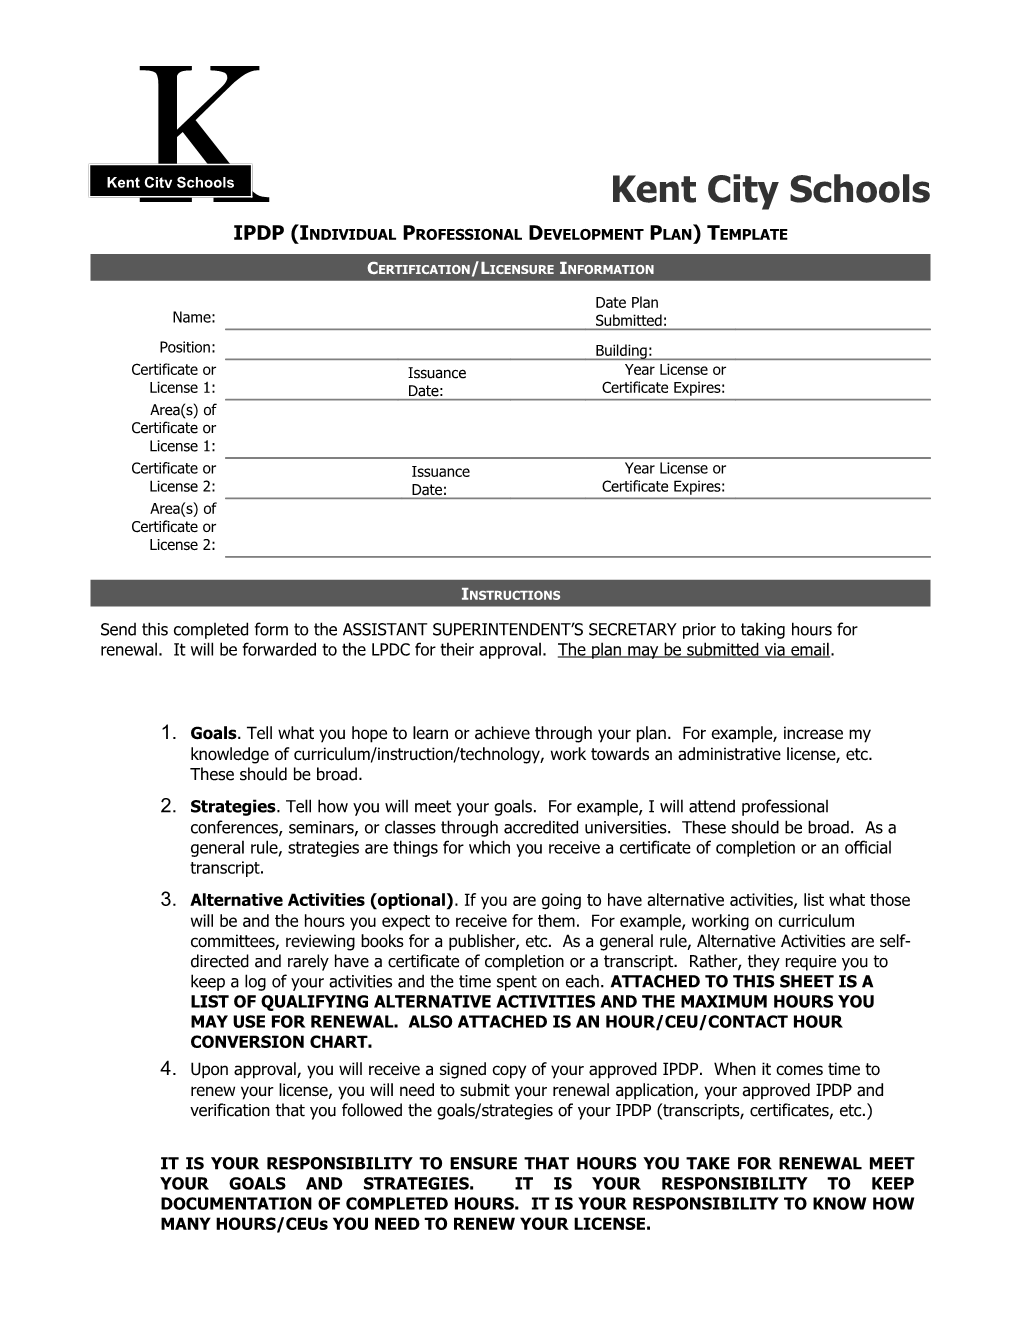 Kent City Schools